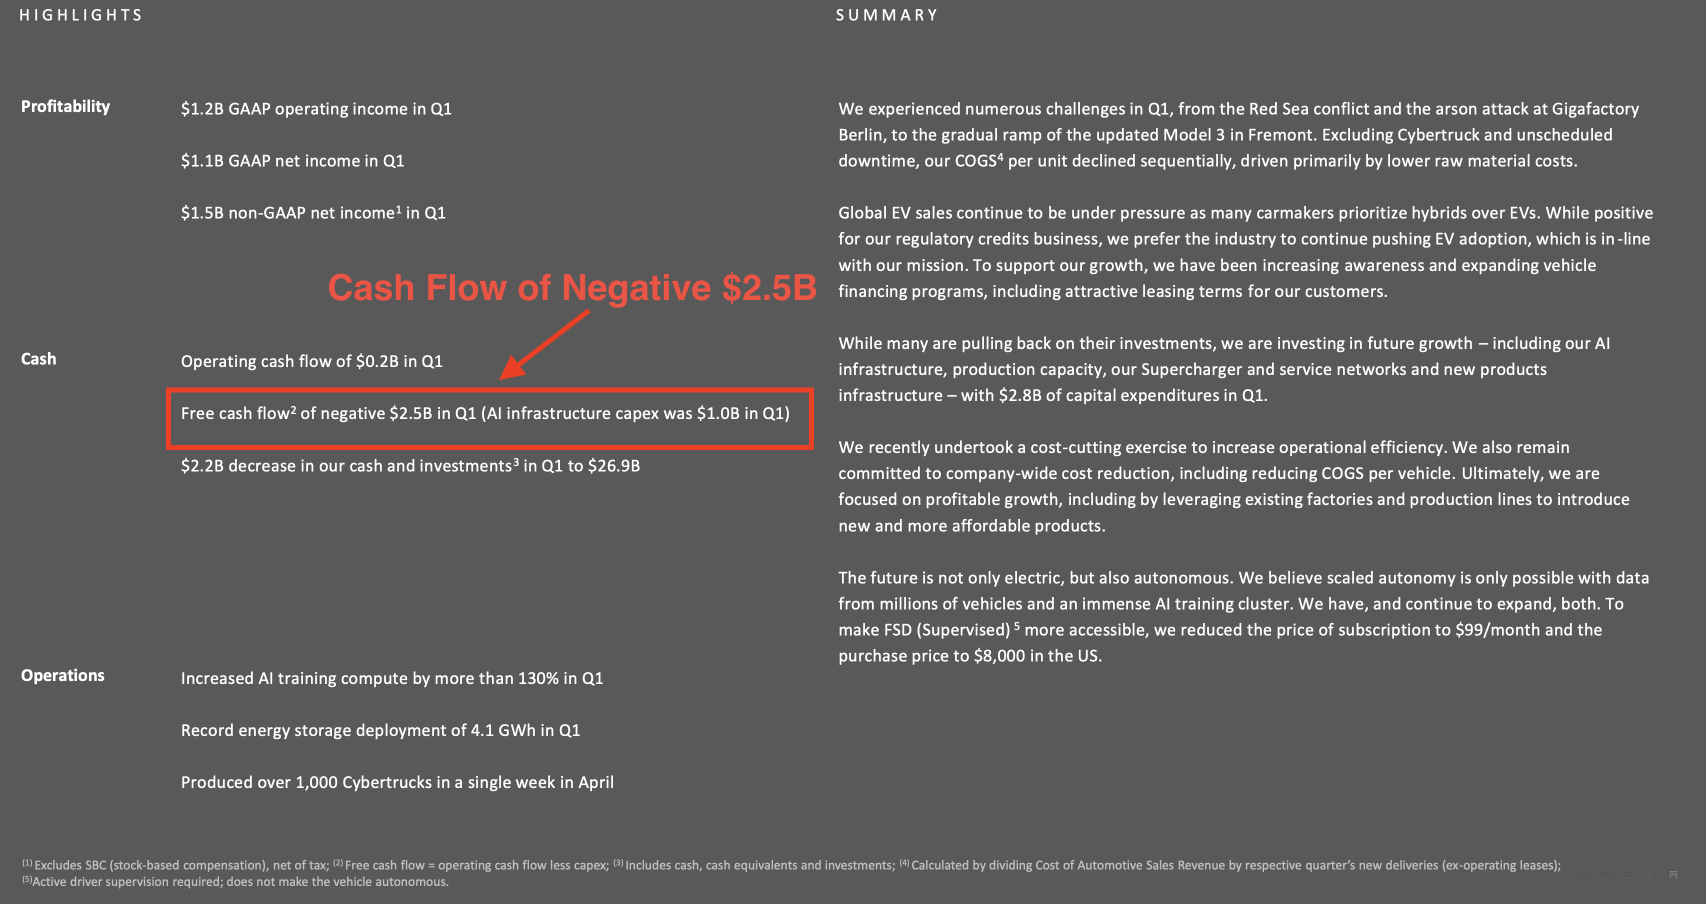 Cash Flow of Negative $2.5B